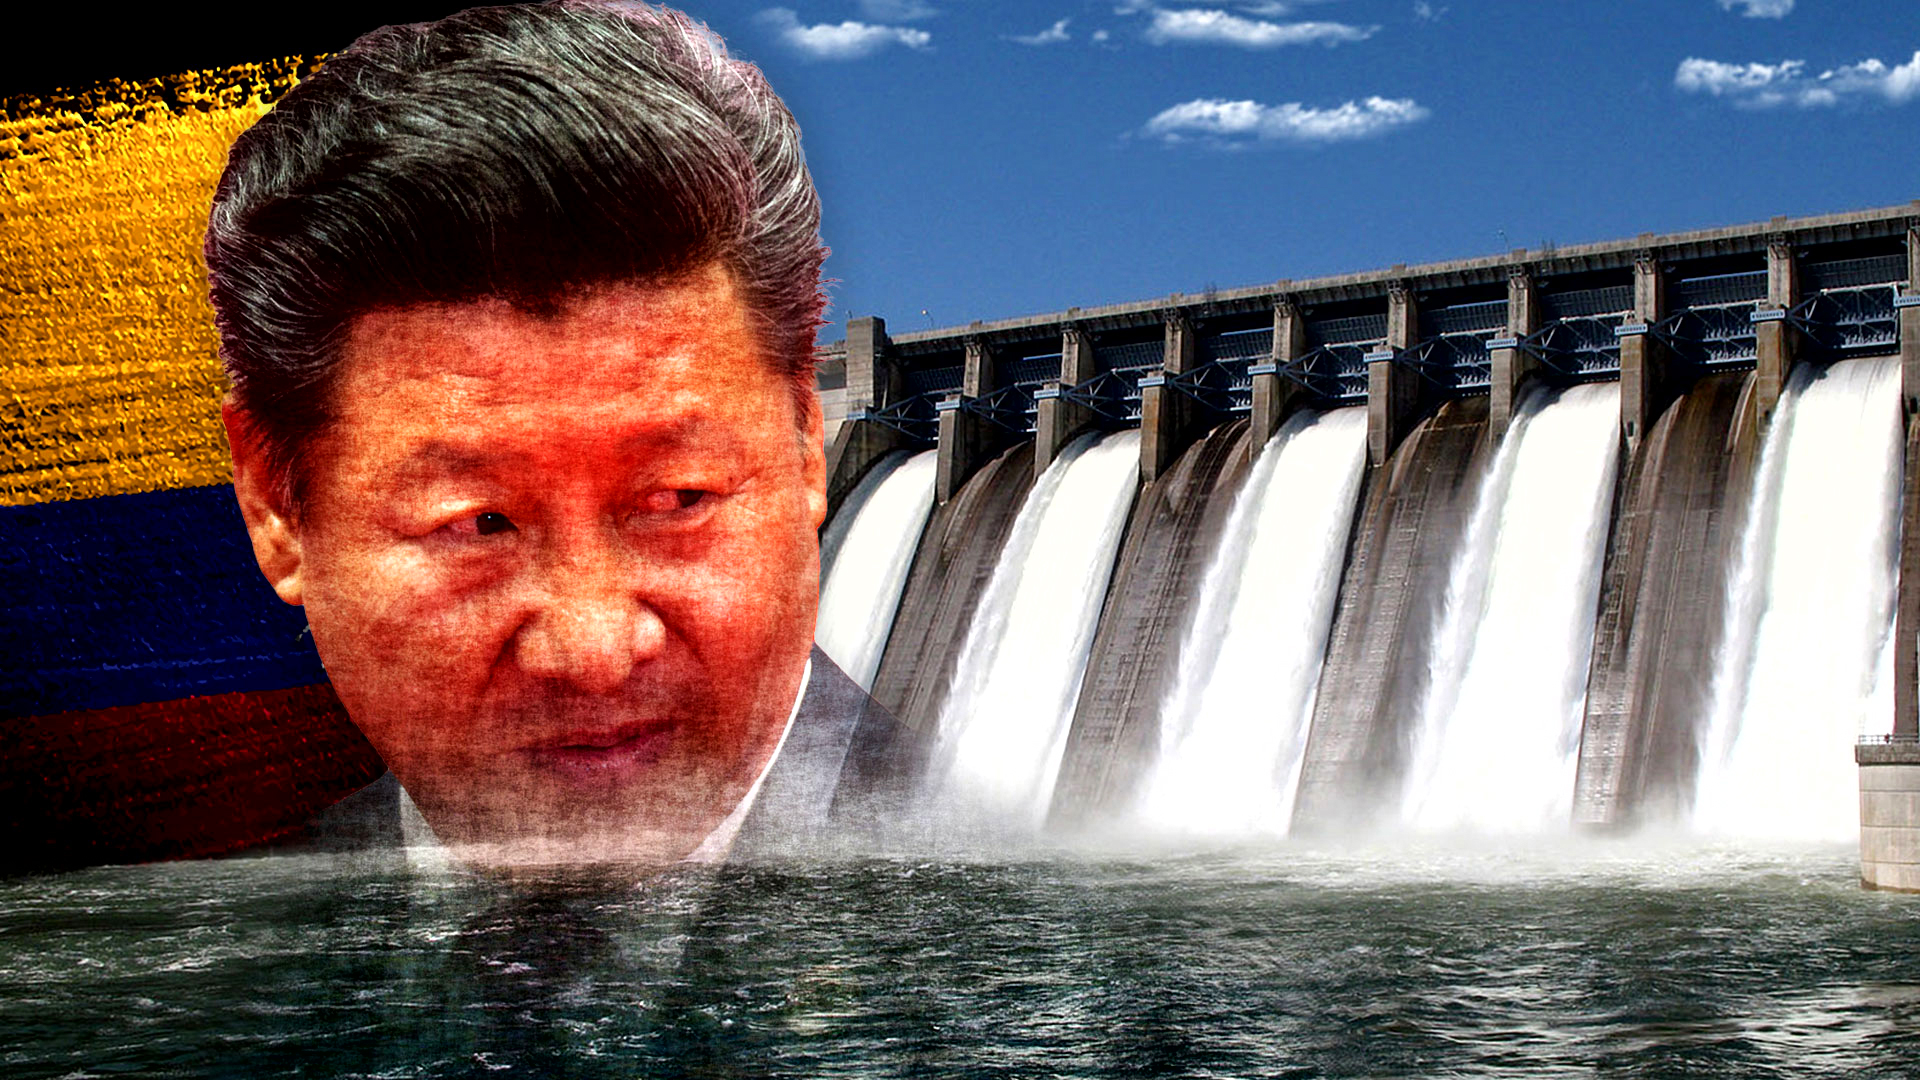 Xi Jinping inició una agresiva campaña de desembarco en América Latina con créditos impagables, enfocado en áreas de infraestructura estratégica y recursos naturales. Ecuador lo padece con Coca Codo Sinclair (Infobae)